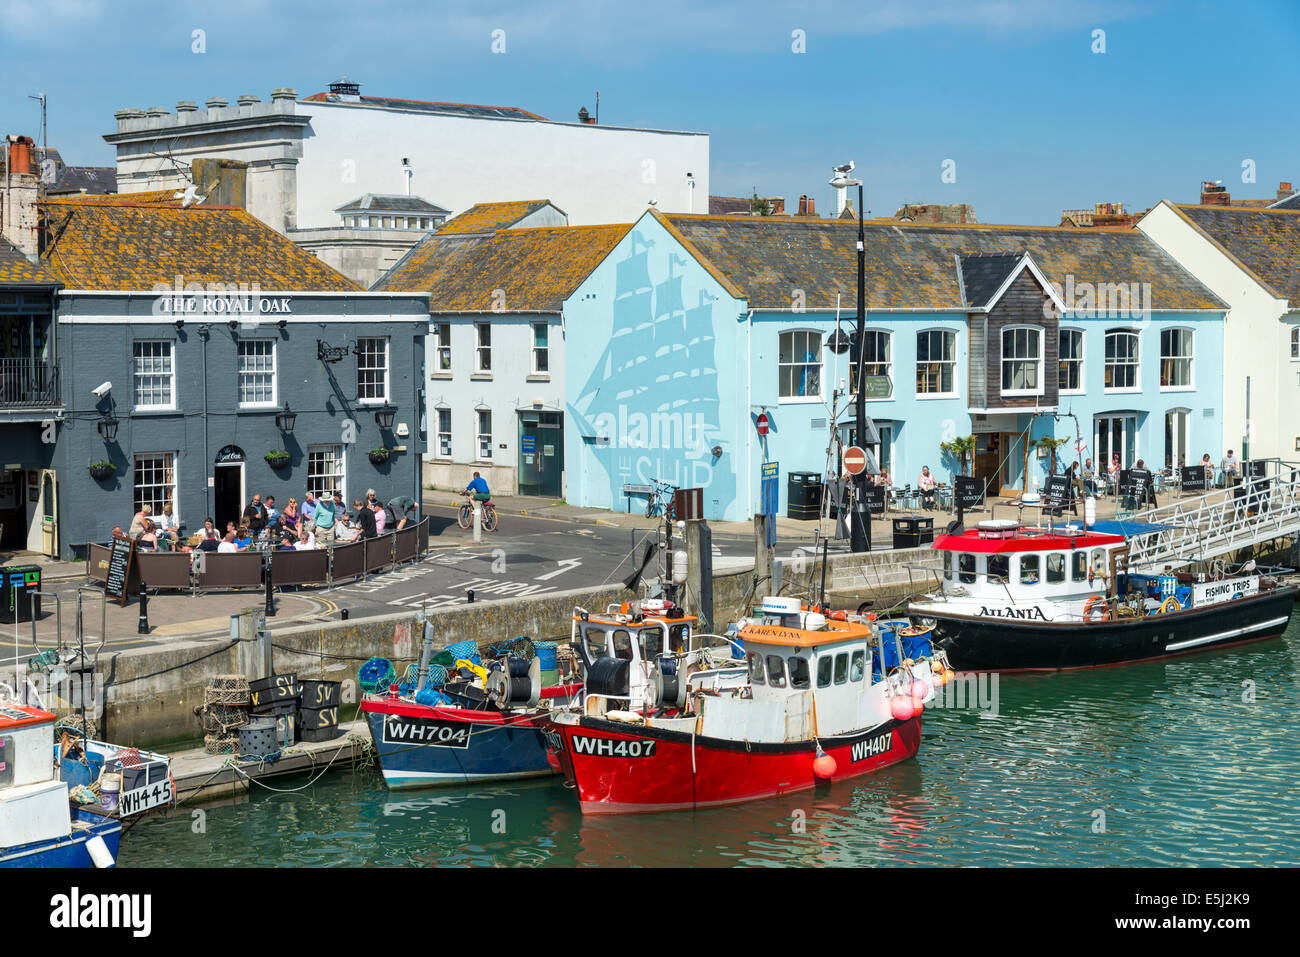 Bateaux de pêche dans le port de Weymouth, Dorset, England, UK Banque D'Images